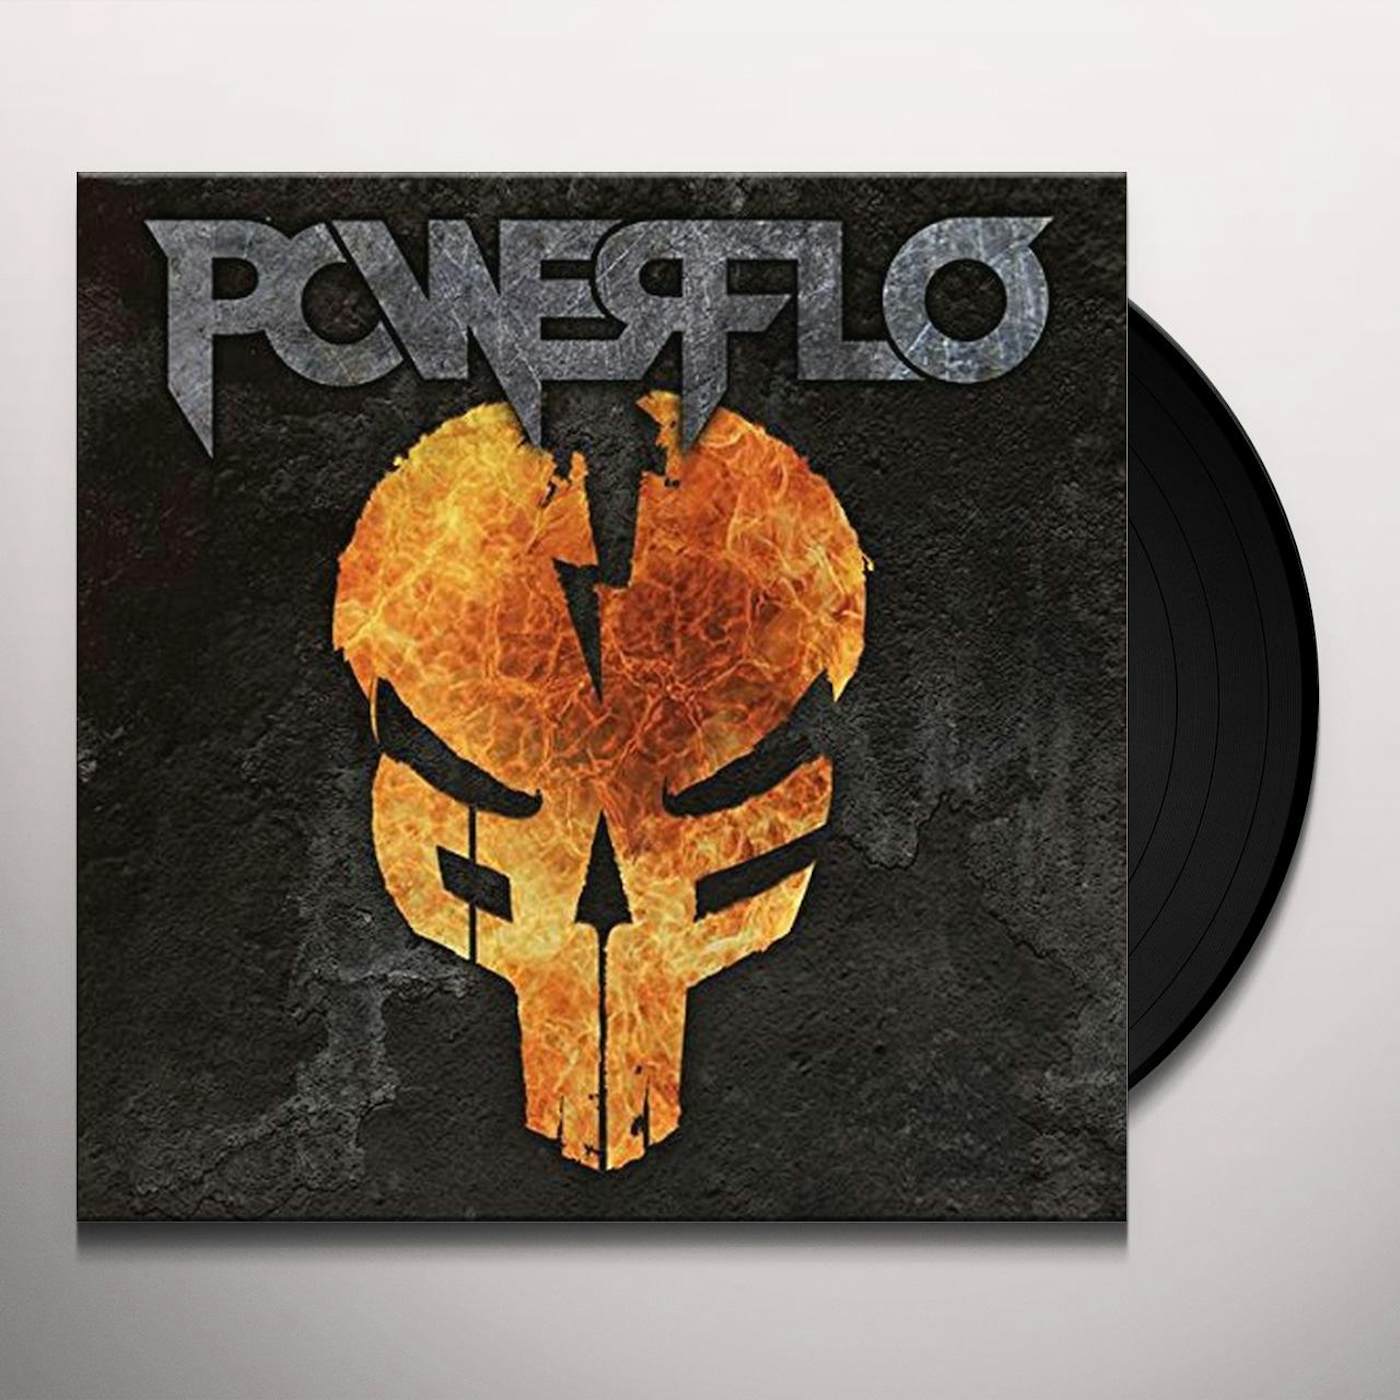 Powerflo Vinyl Record